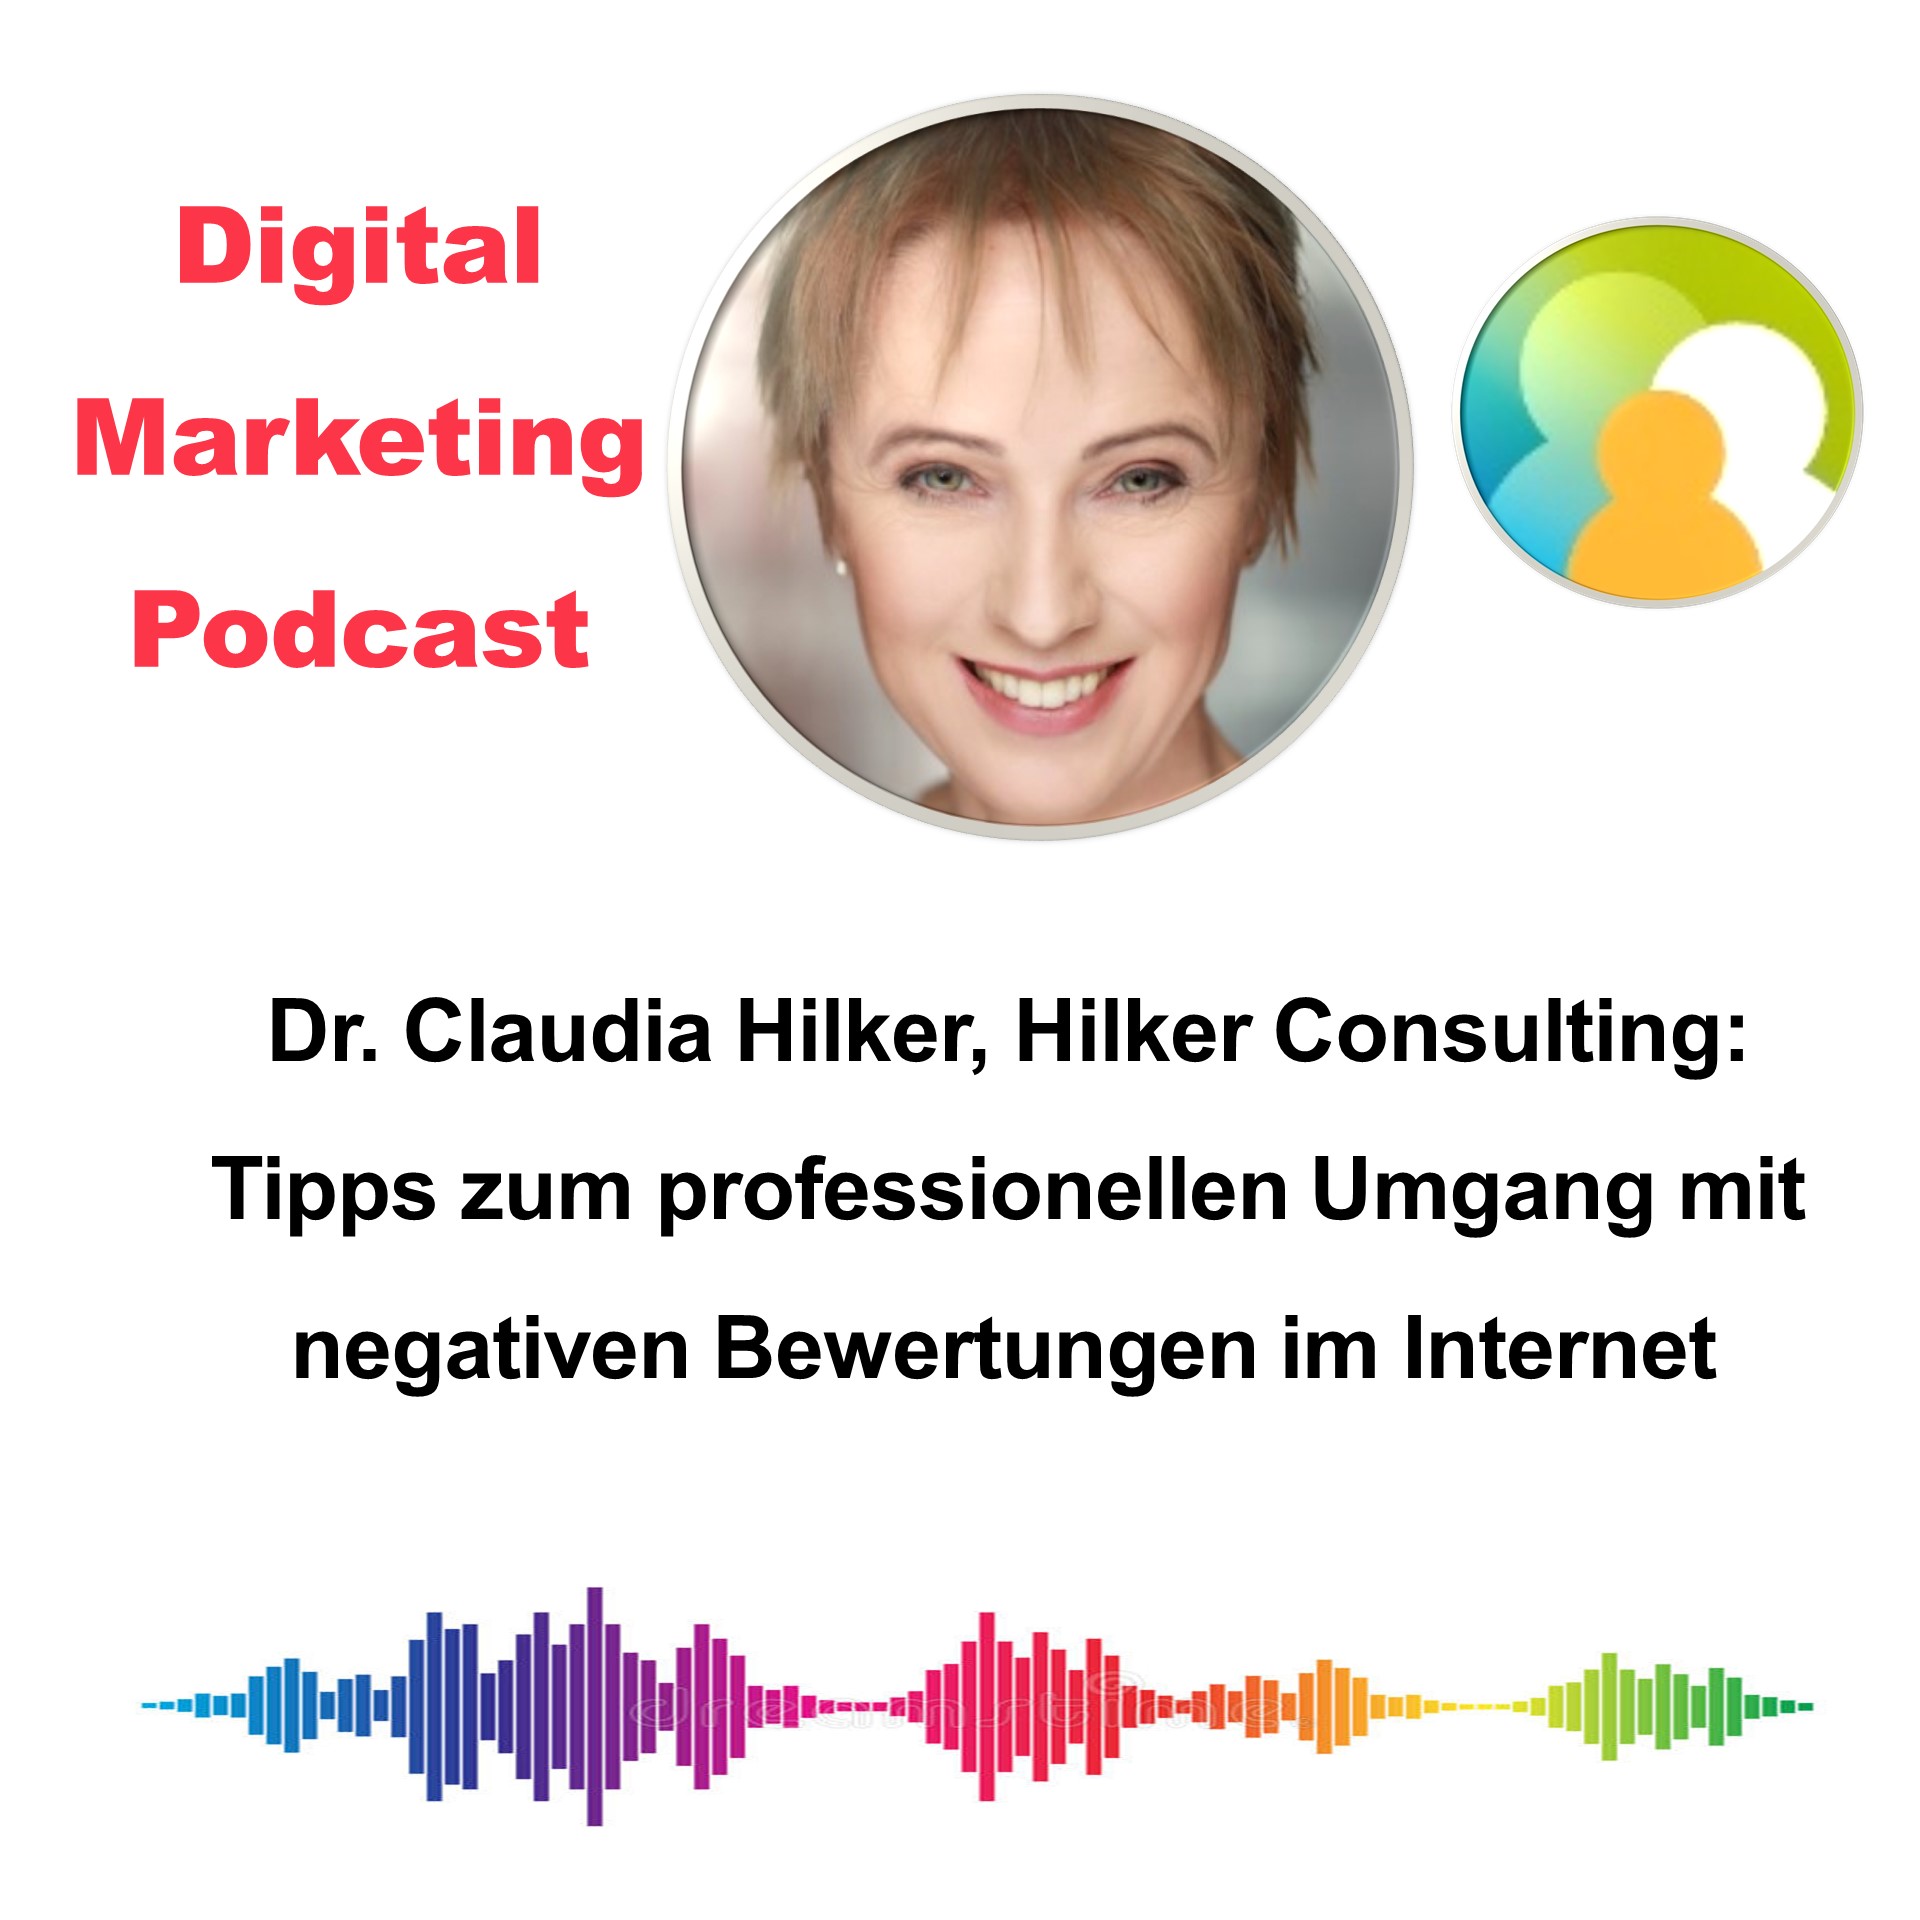 Digital Marketing Podcast_Umgang negative Bewertungen online_Claudia Hilker